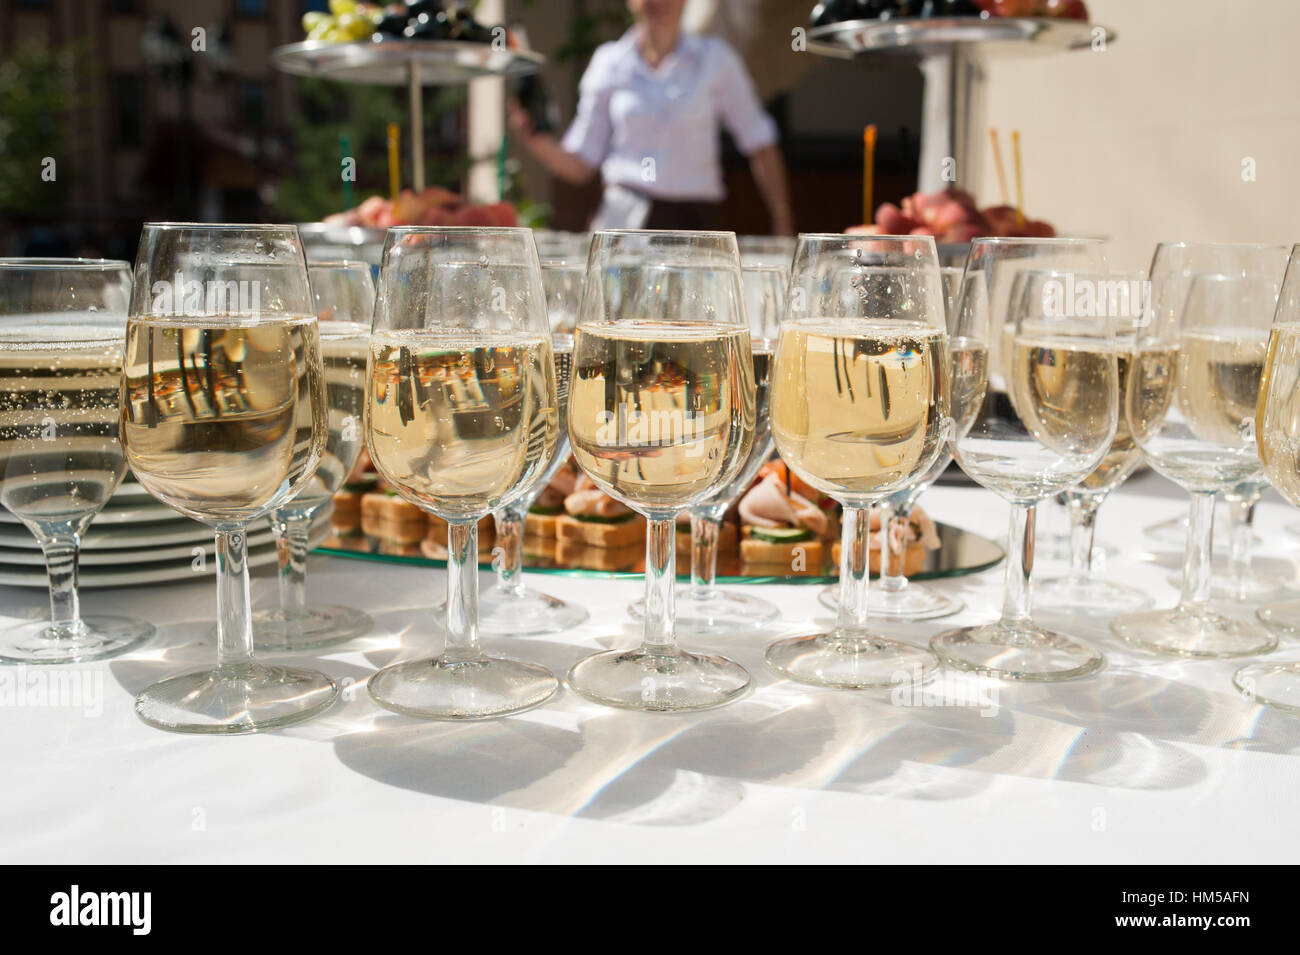 Réception de mariage. Table avec des collations et des verres de champagne dans un restaurant Banque D'Images